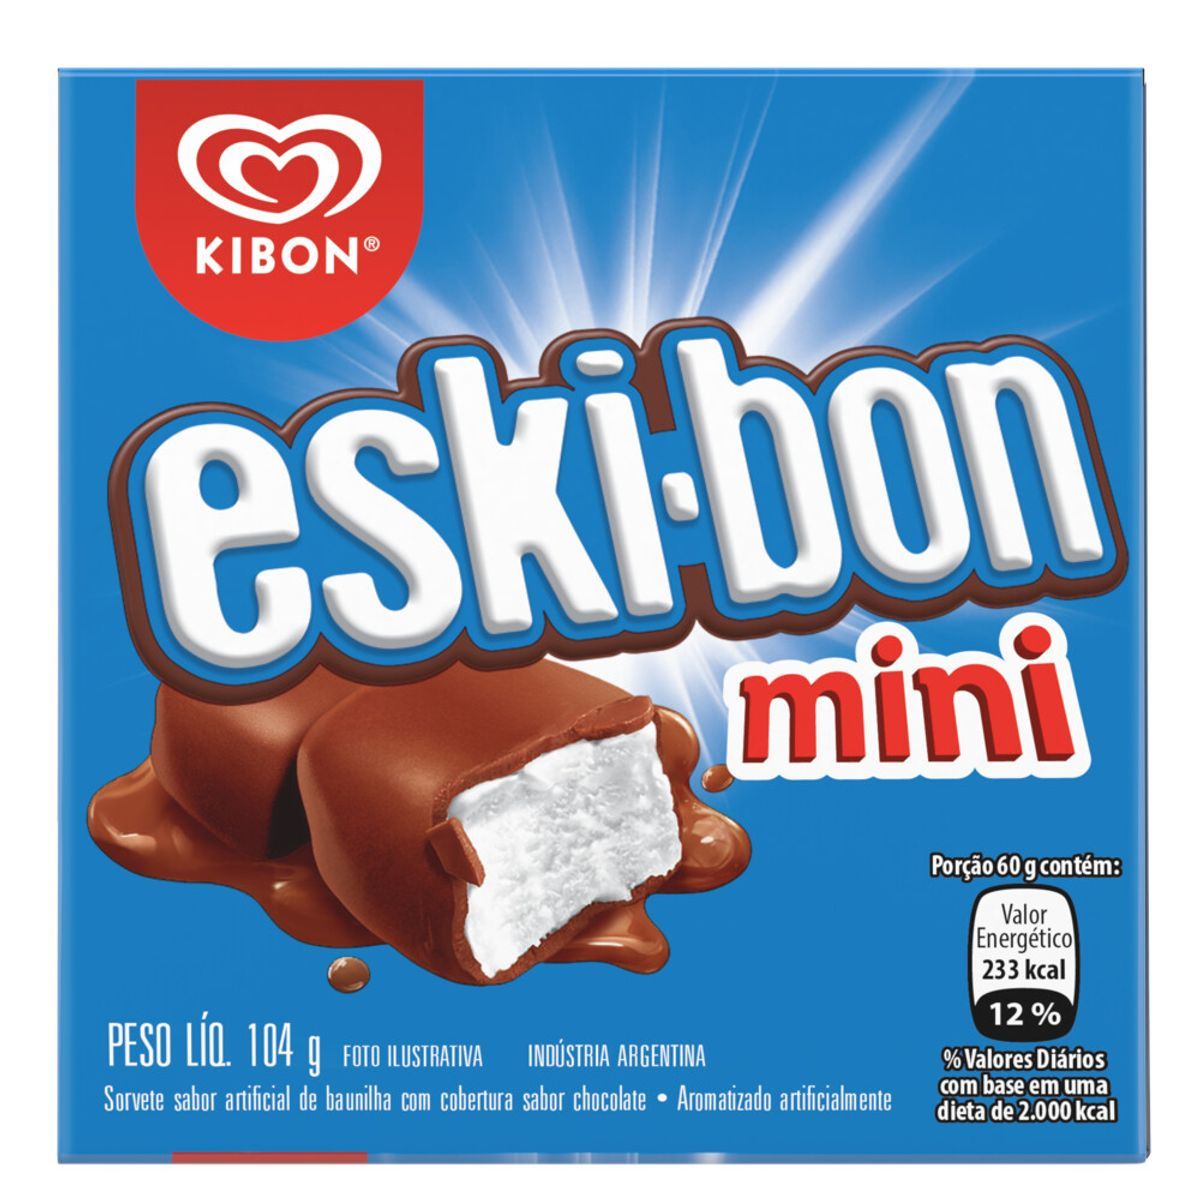 Sorvete Kibon Eski-bon Mini Caixa 92g image number 0